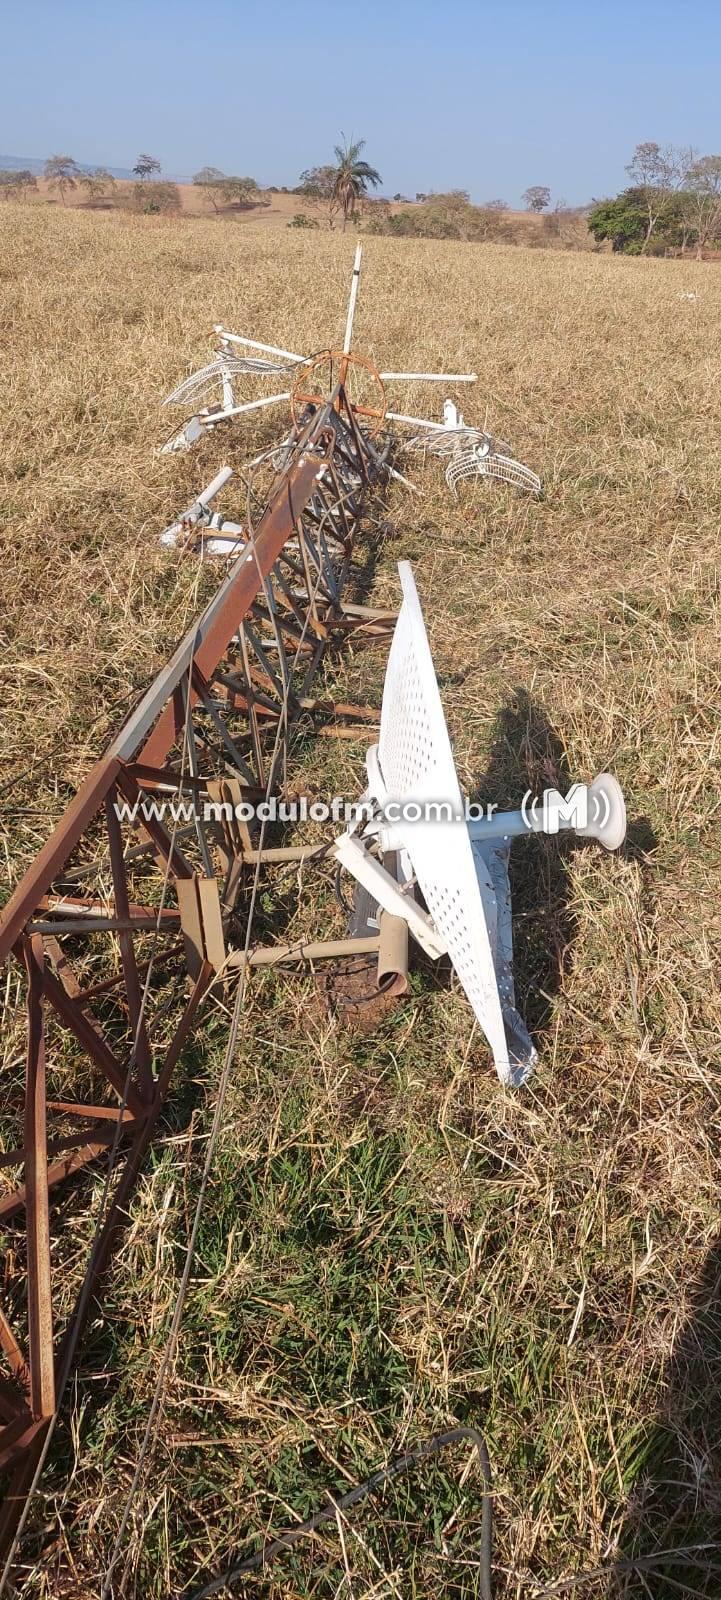 Imagem 1 do post Vândalos destroem torre de provedor de internet na Comunidade de Santo Antônio do Quebranzol